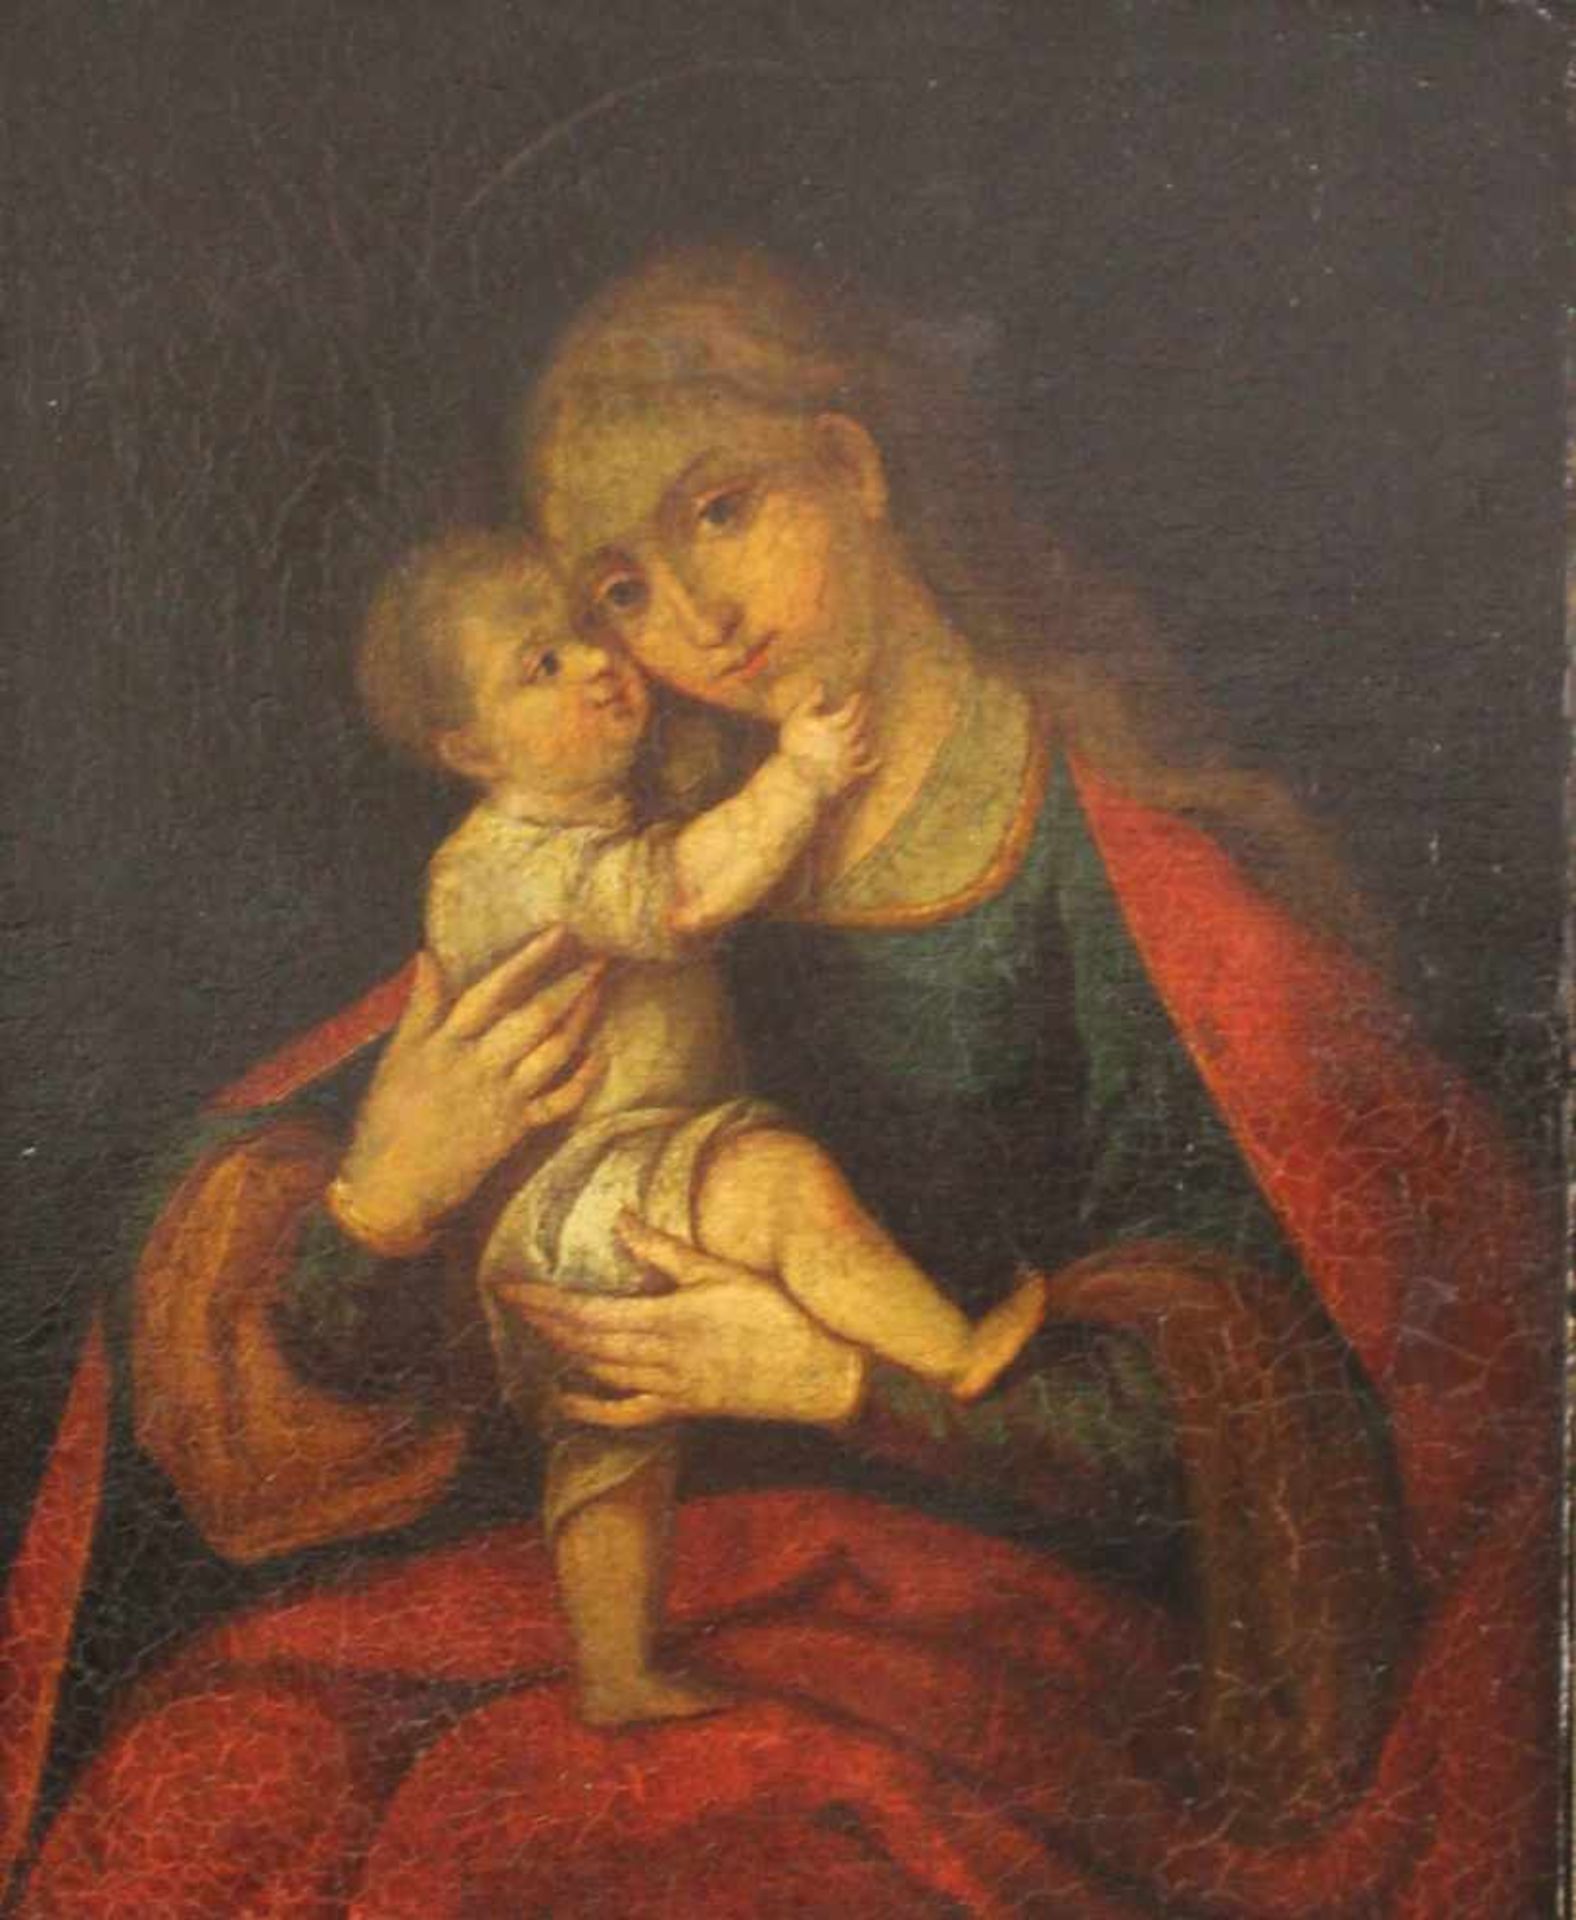 UNSIGNIERT (XVIII). Maria mit Jesus.66 cm x 54 cm. Öl auf Leinwand, u. a. doubliert. Keine